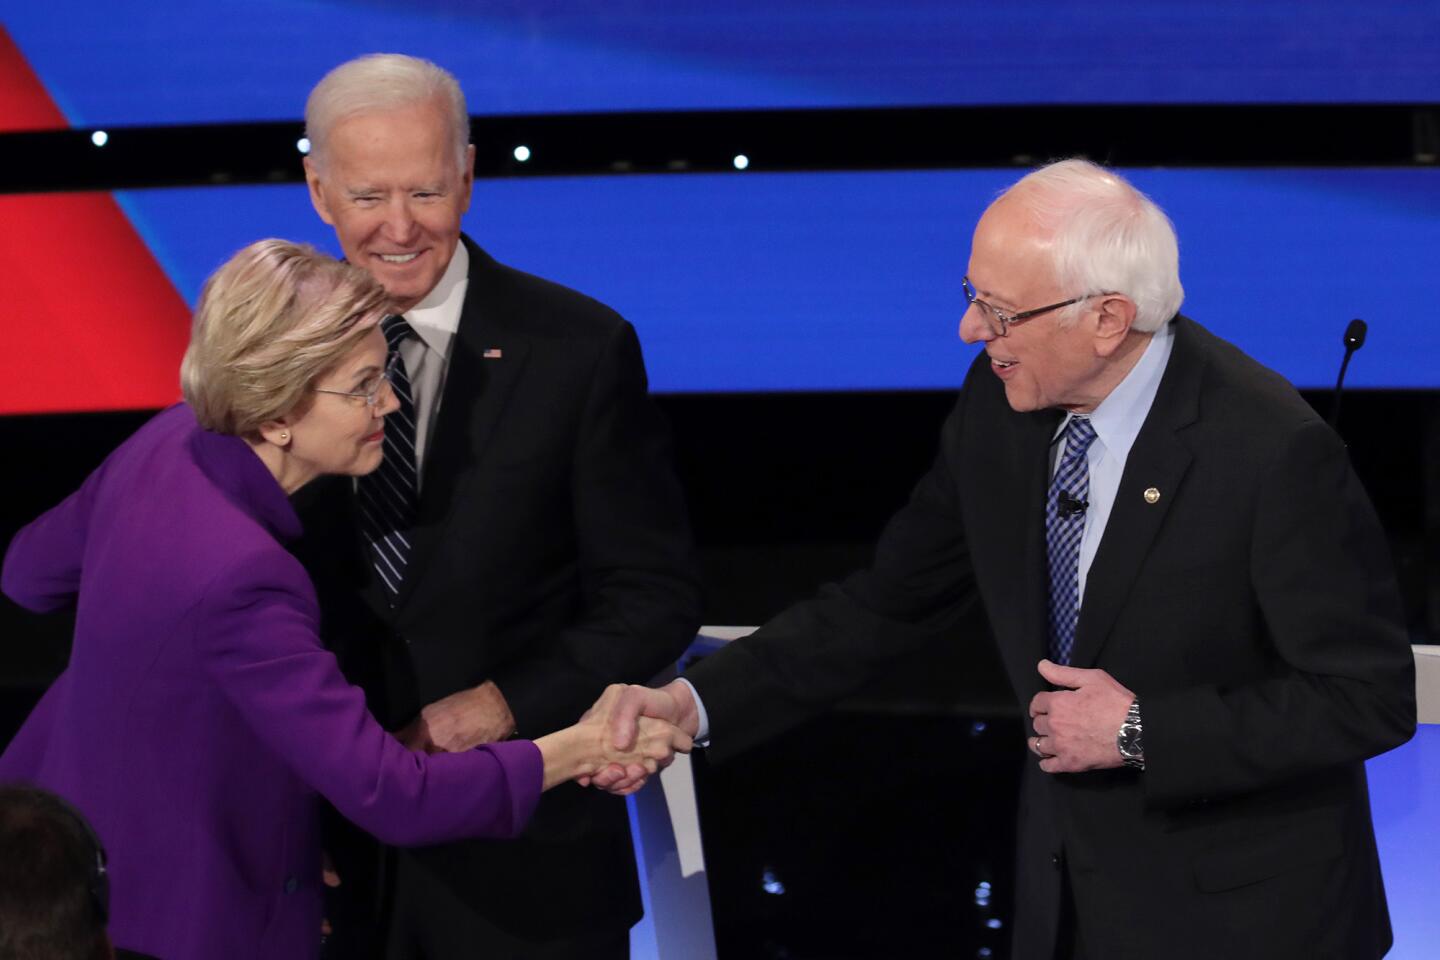 Elizabeth Warren greets Bernie Sanders as Joe Biden looks on.